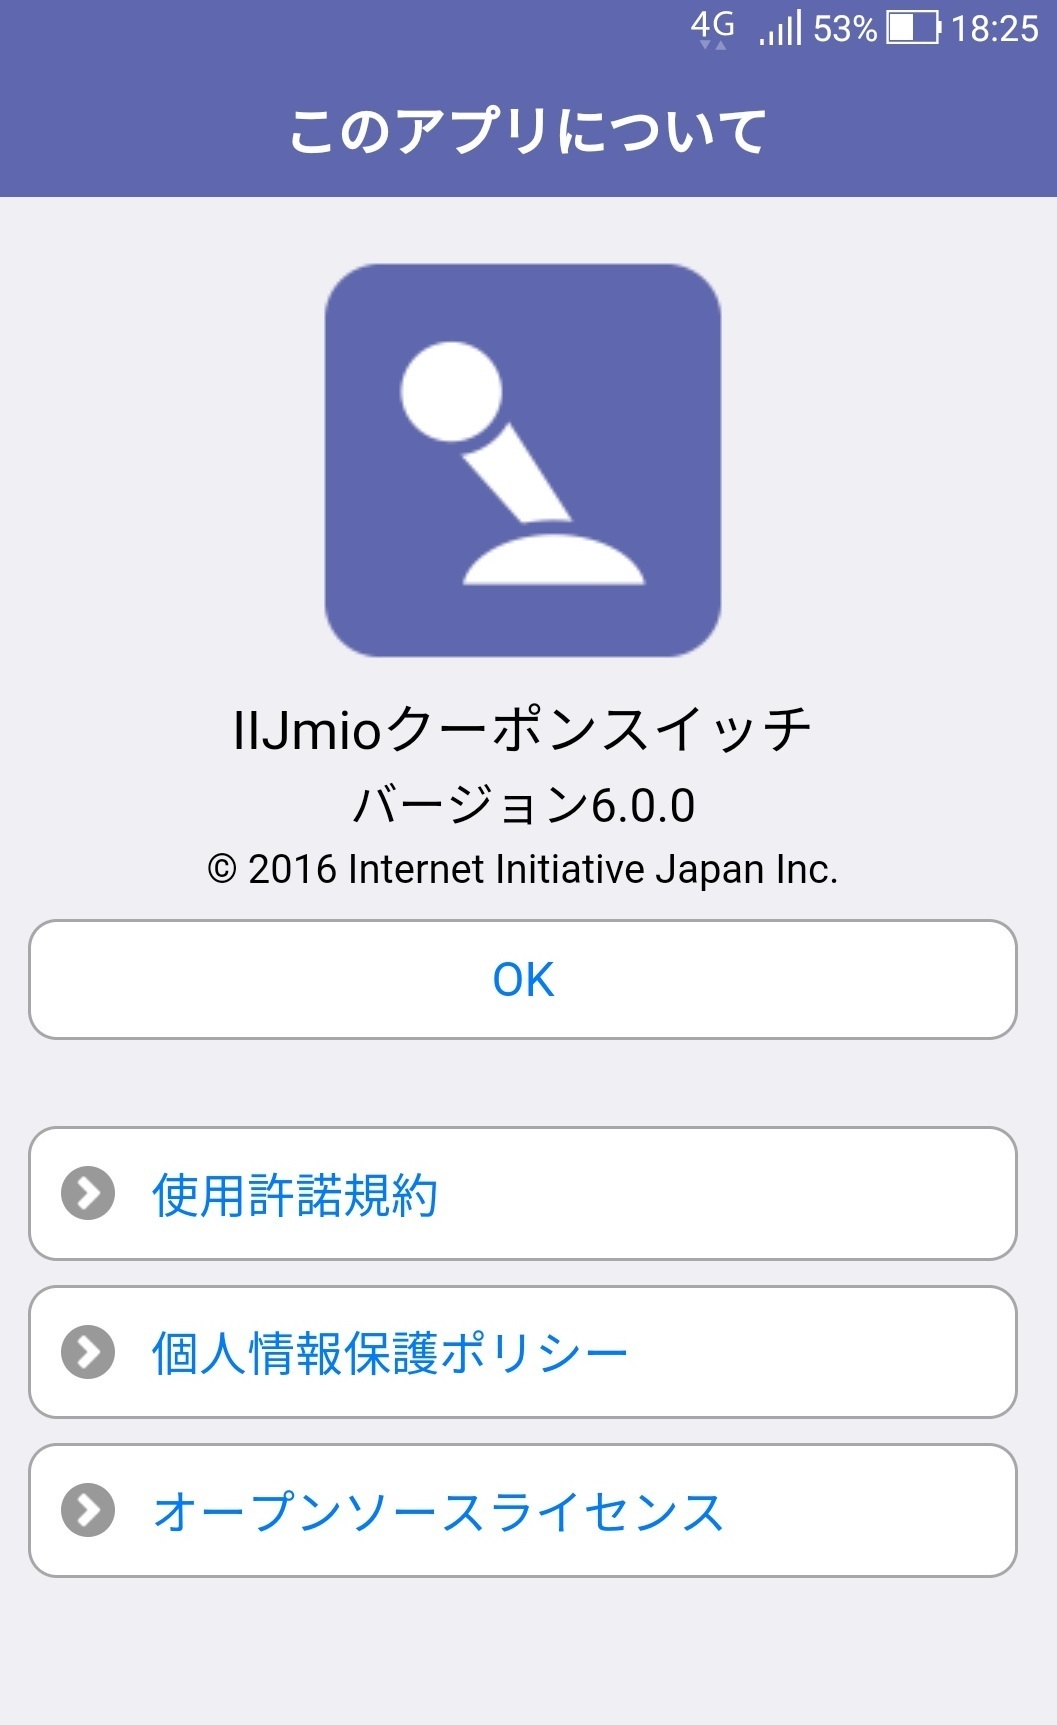 sumaho_iijmio_app_reviews.jpg